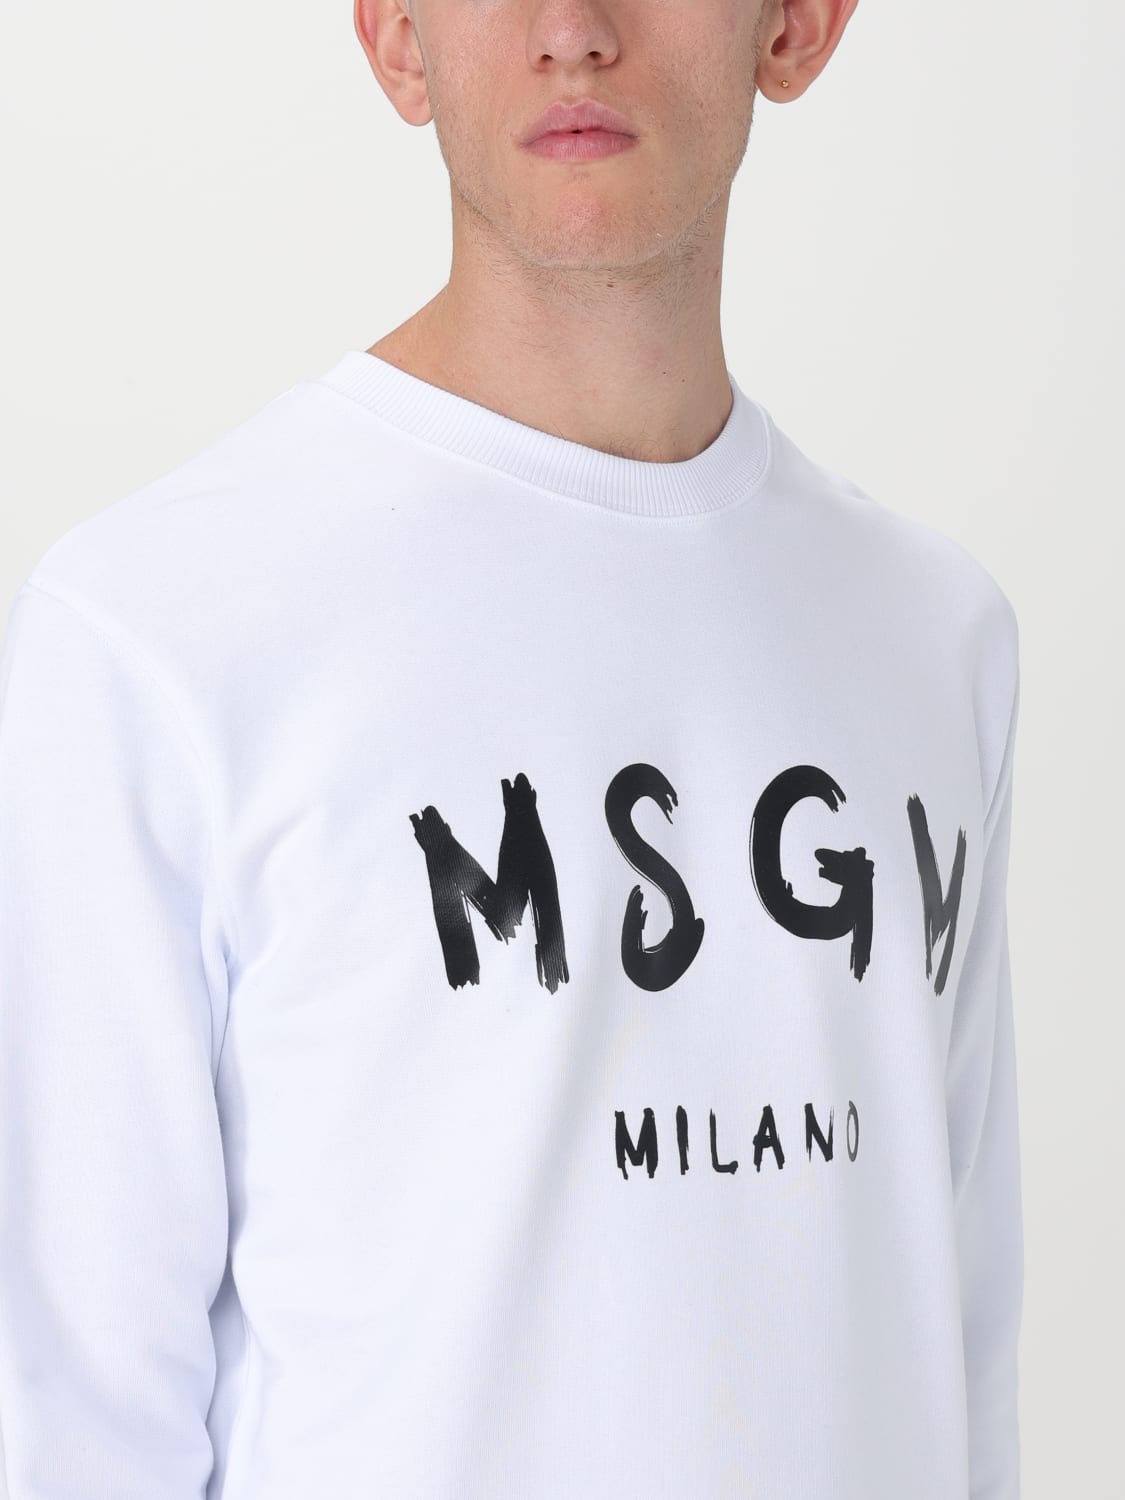 MSGM スウェットシャツ サイズXL ボックスロゴ - スウェット